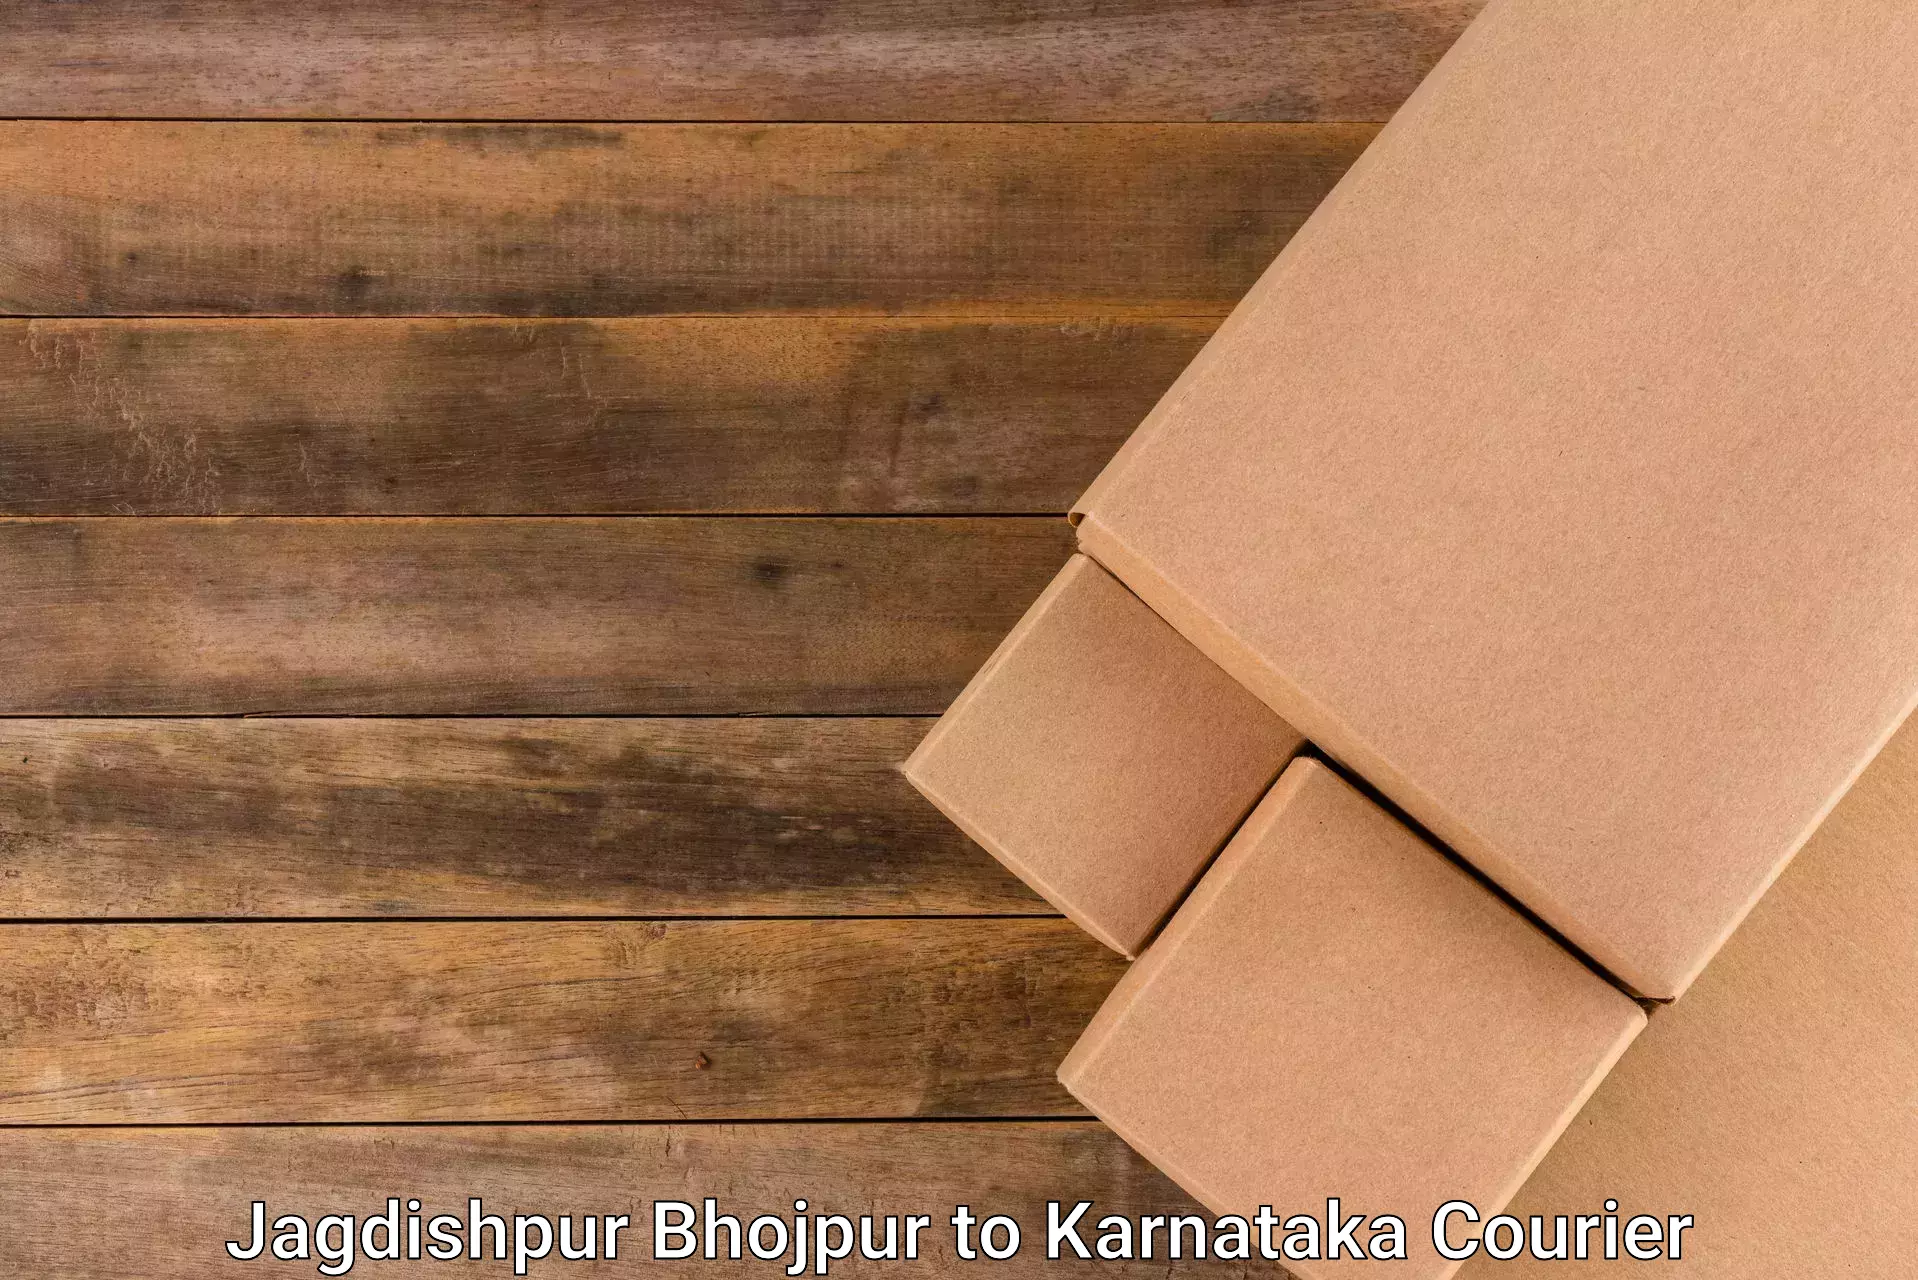 Courier dispatch services in Jagdishpur Bhojpur to Devanahalli